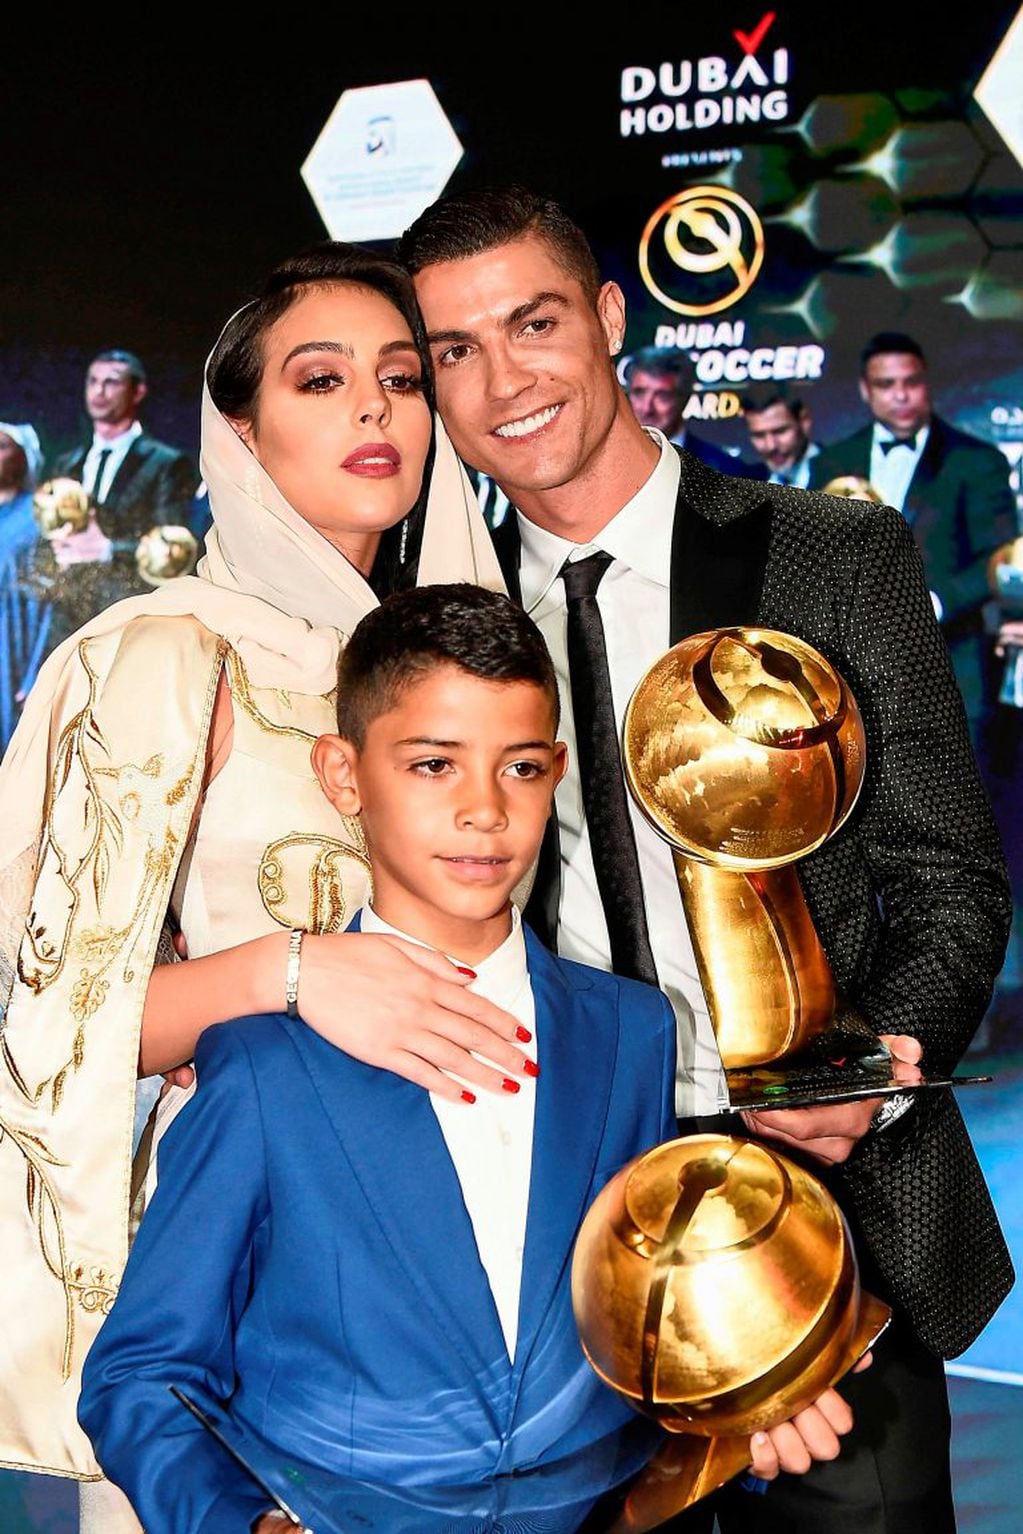 Georgina Rodríguez y Cristiano Ronaldo se han convertido en una de las parejas más populares dentro del mundo del deporte. (Foto: Fabio FERRARI / La Presse / AFP)